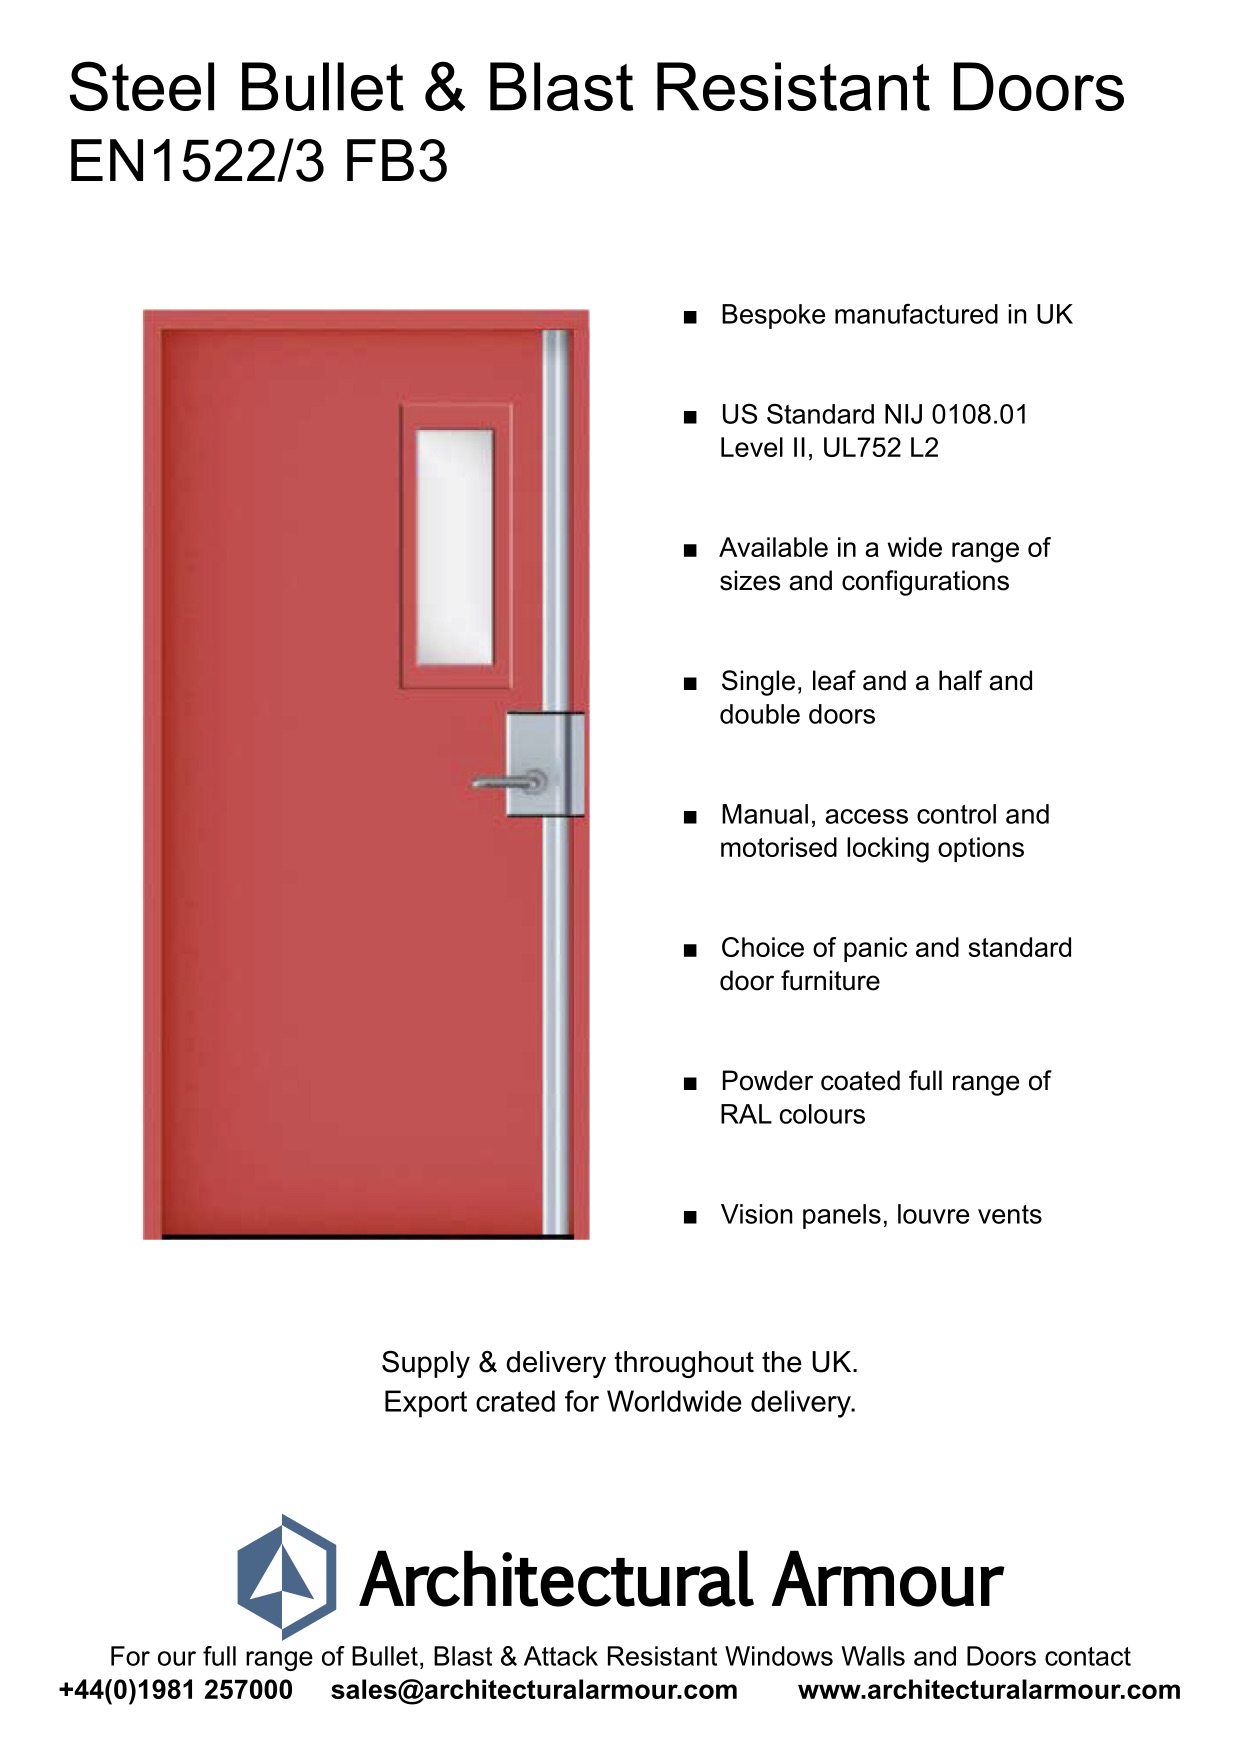 EN1522-3-FB3-Single-Slim-Vision-Panel-Blast-and-Bullet-Resistant-Steel-Door